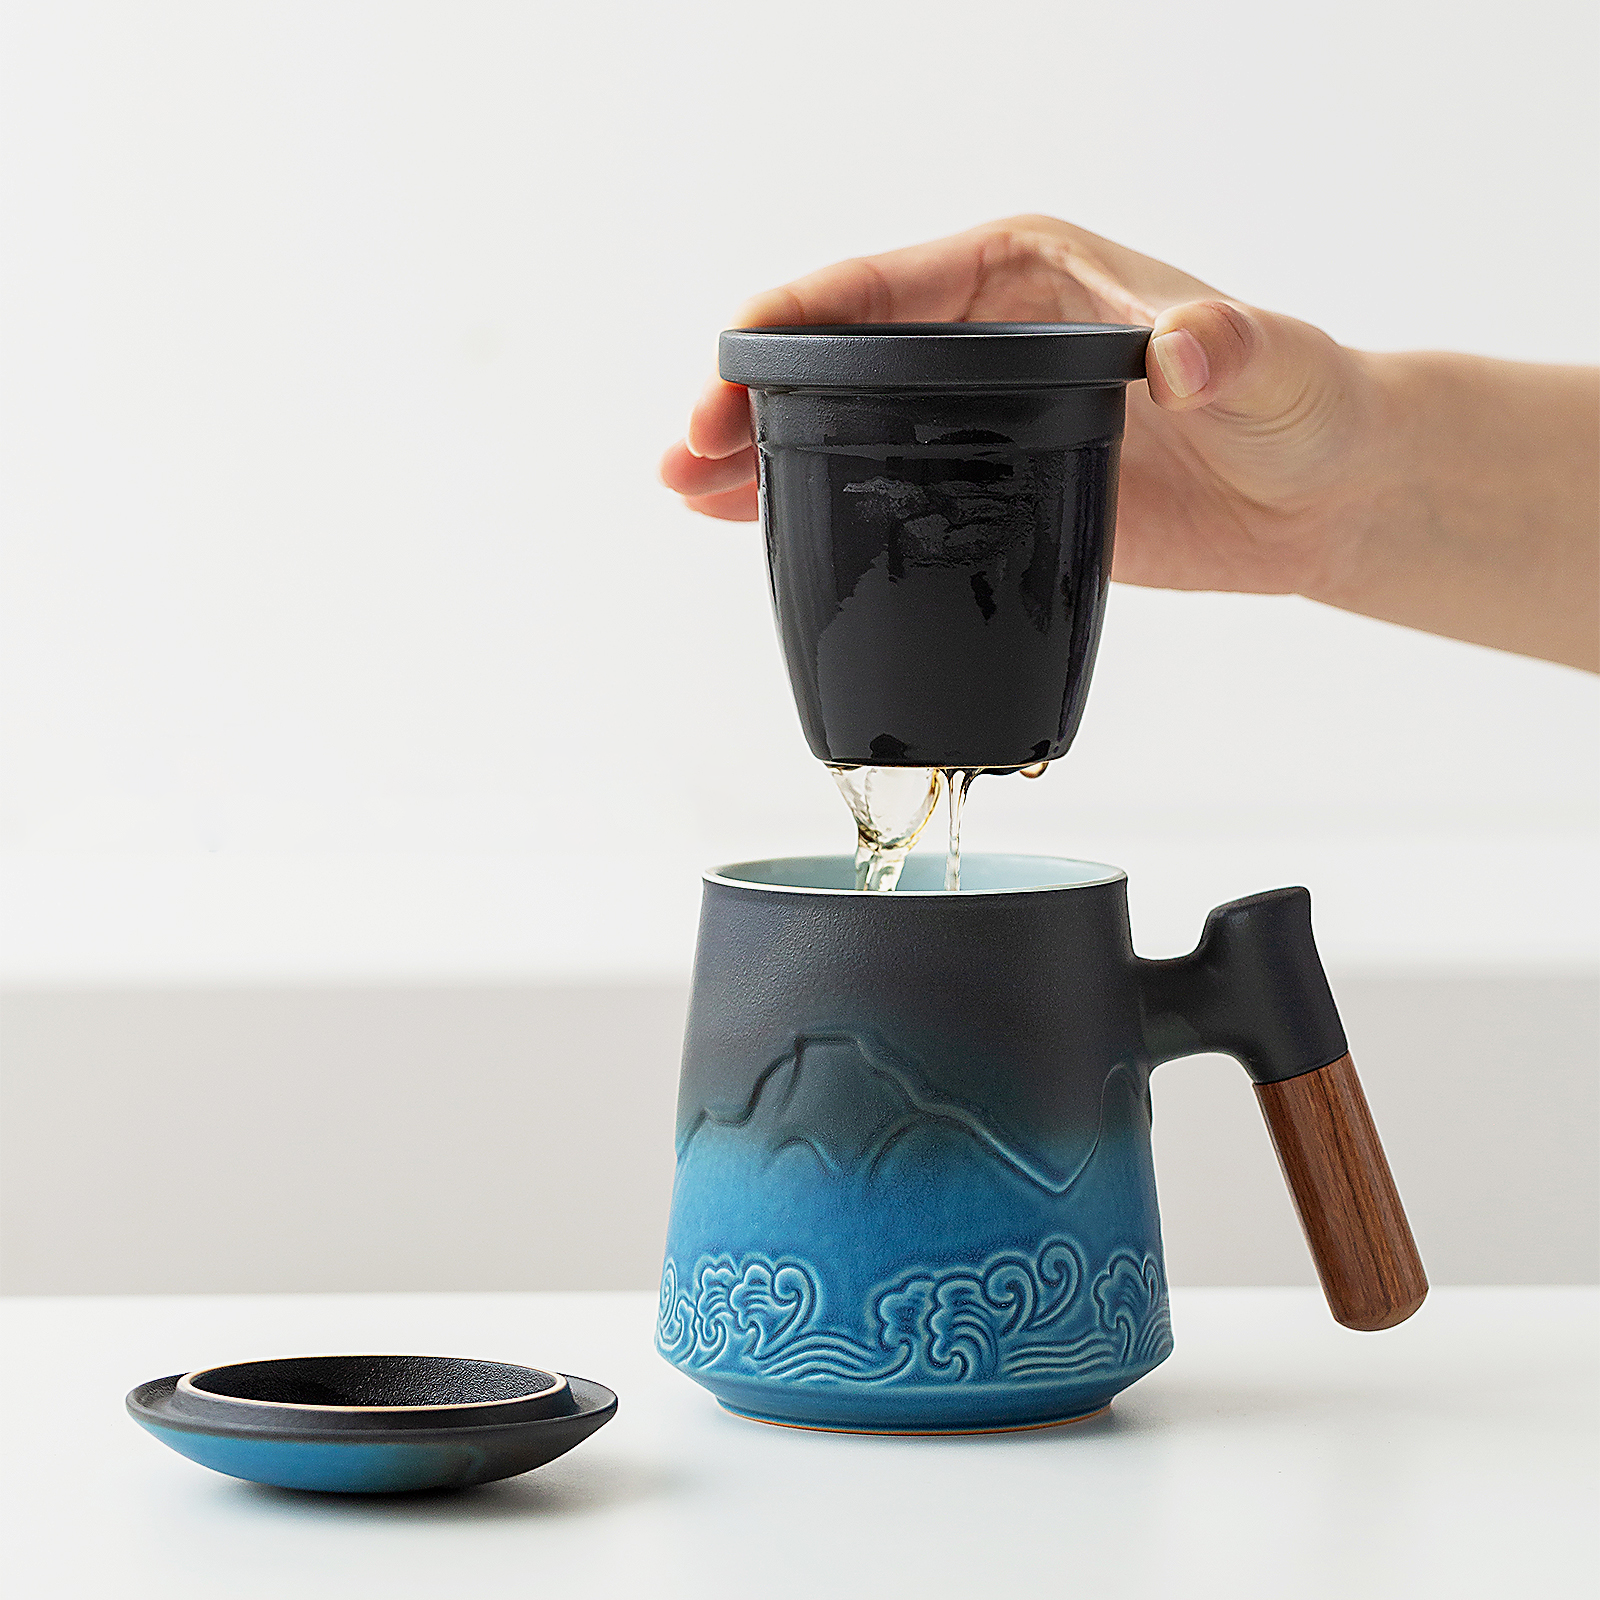 zens tea mug